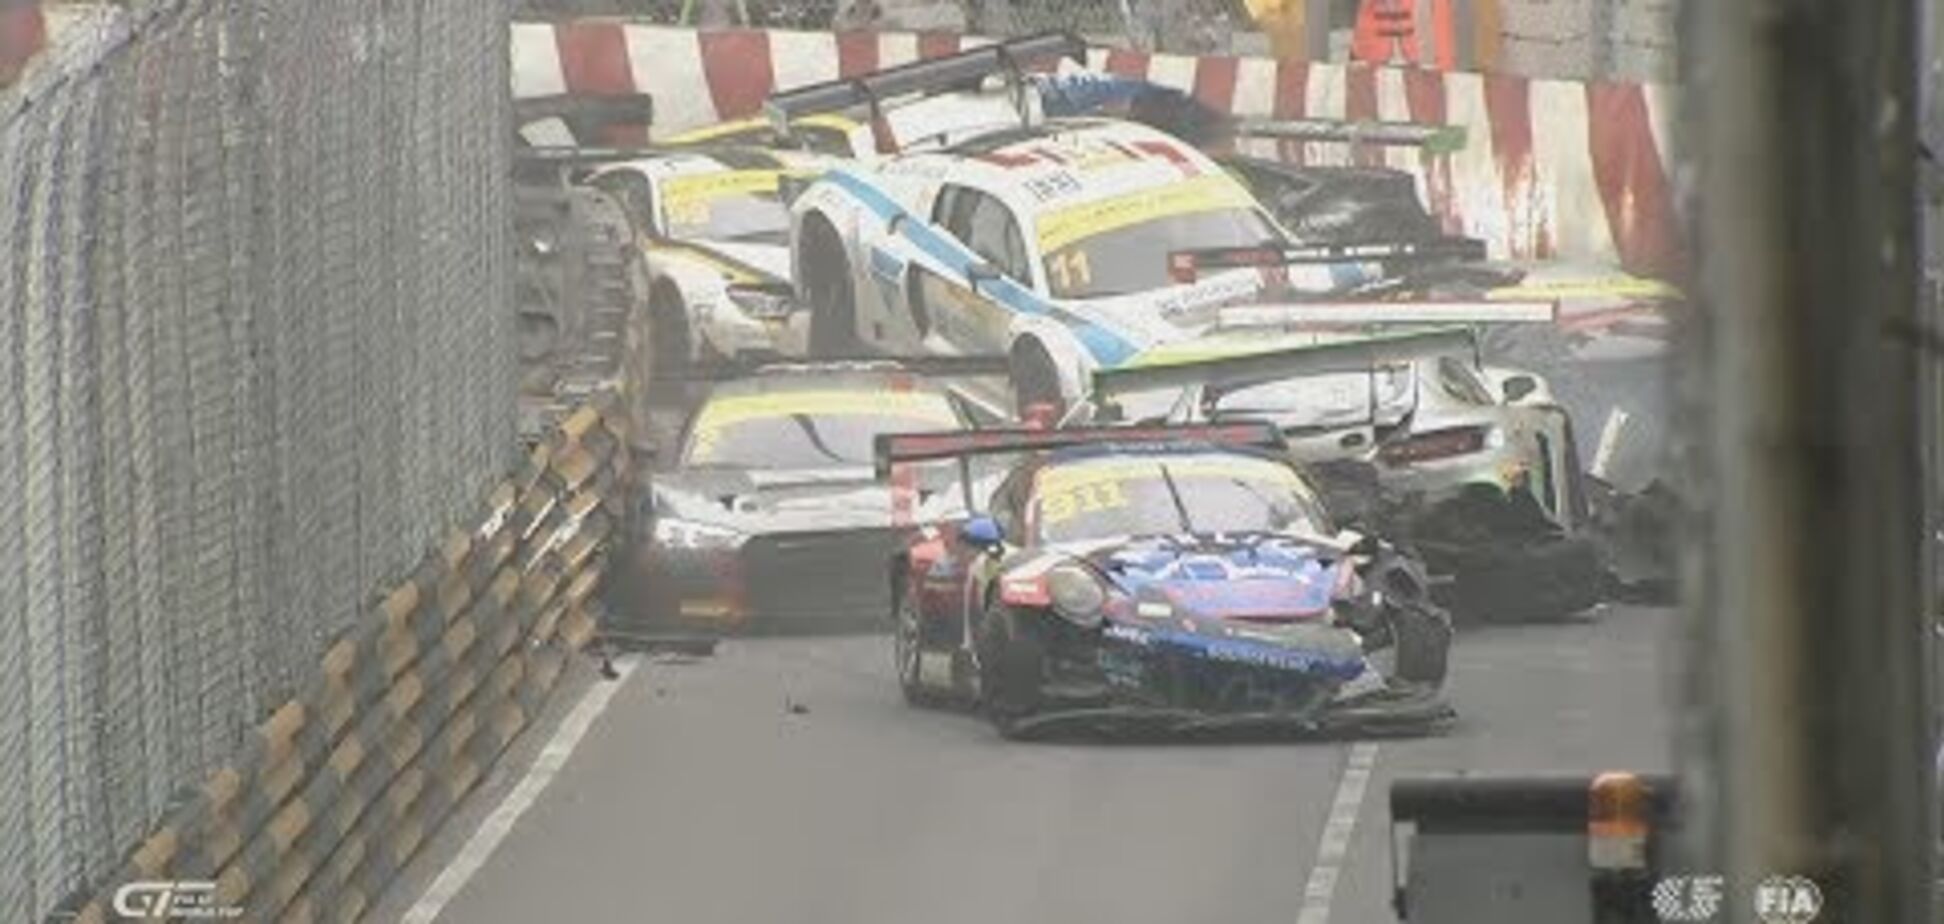 Розбилося 16 машин: відео лютої аварії на етапі GT стало хітом мережі